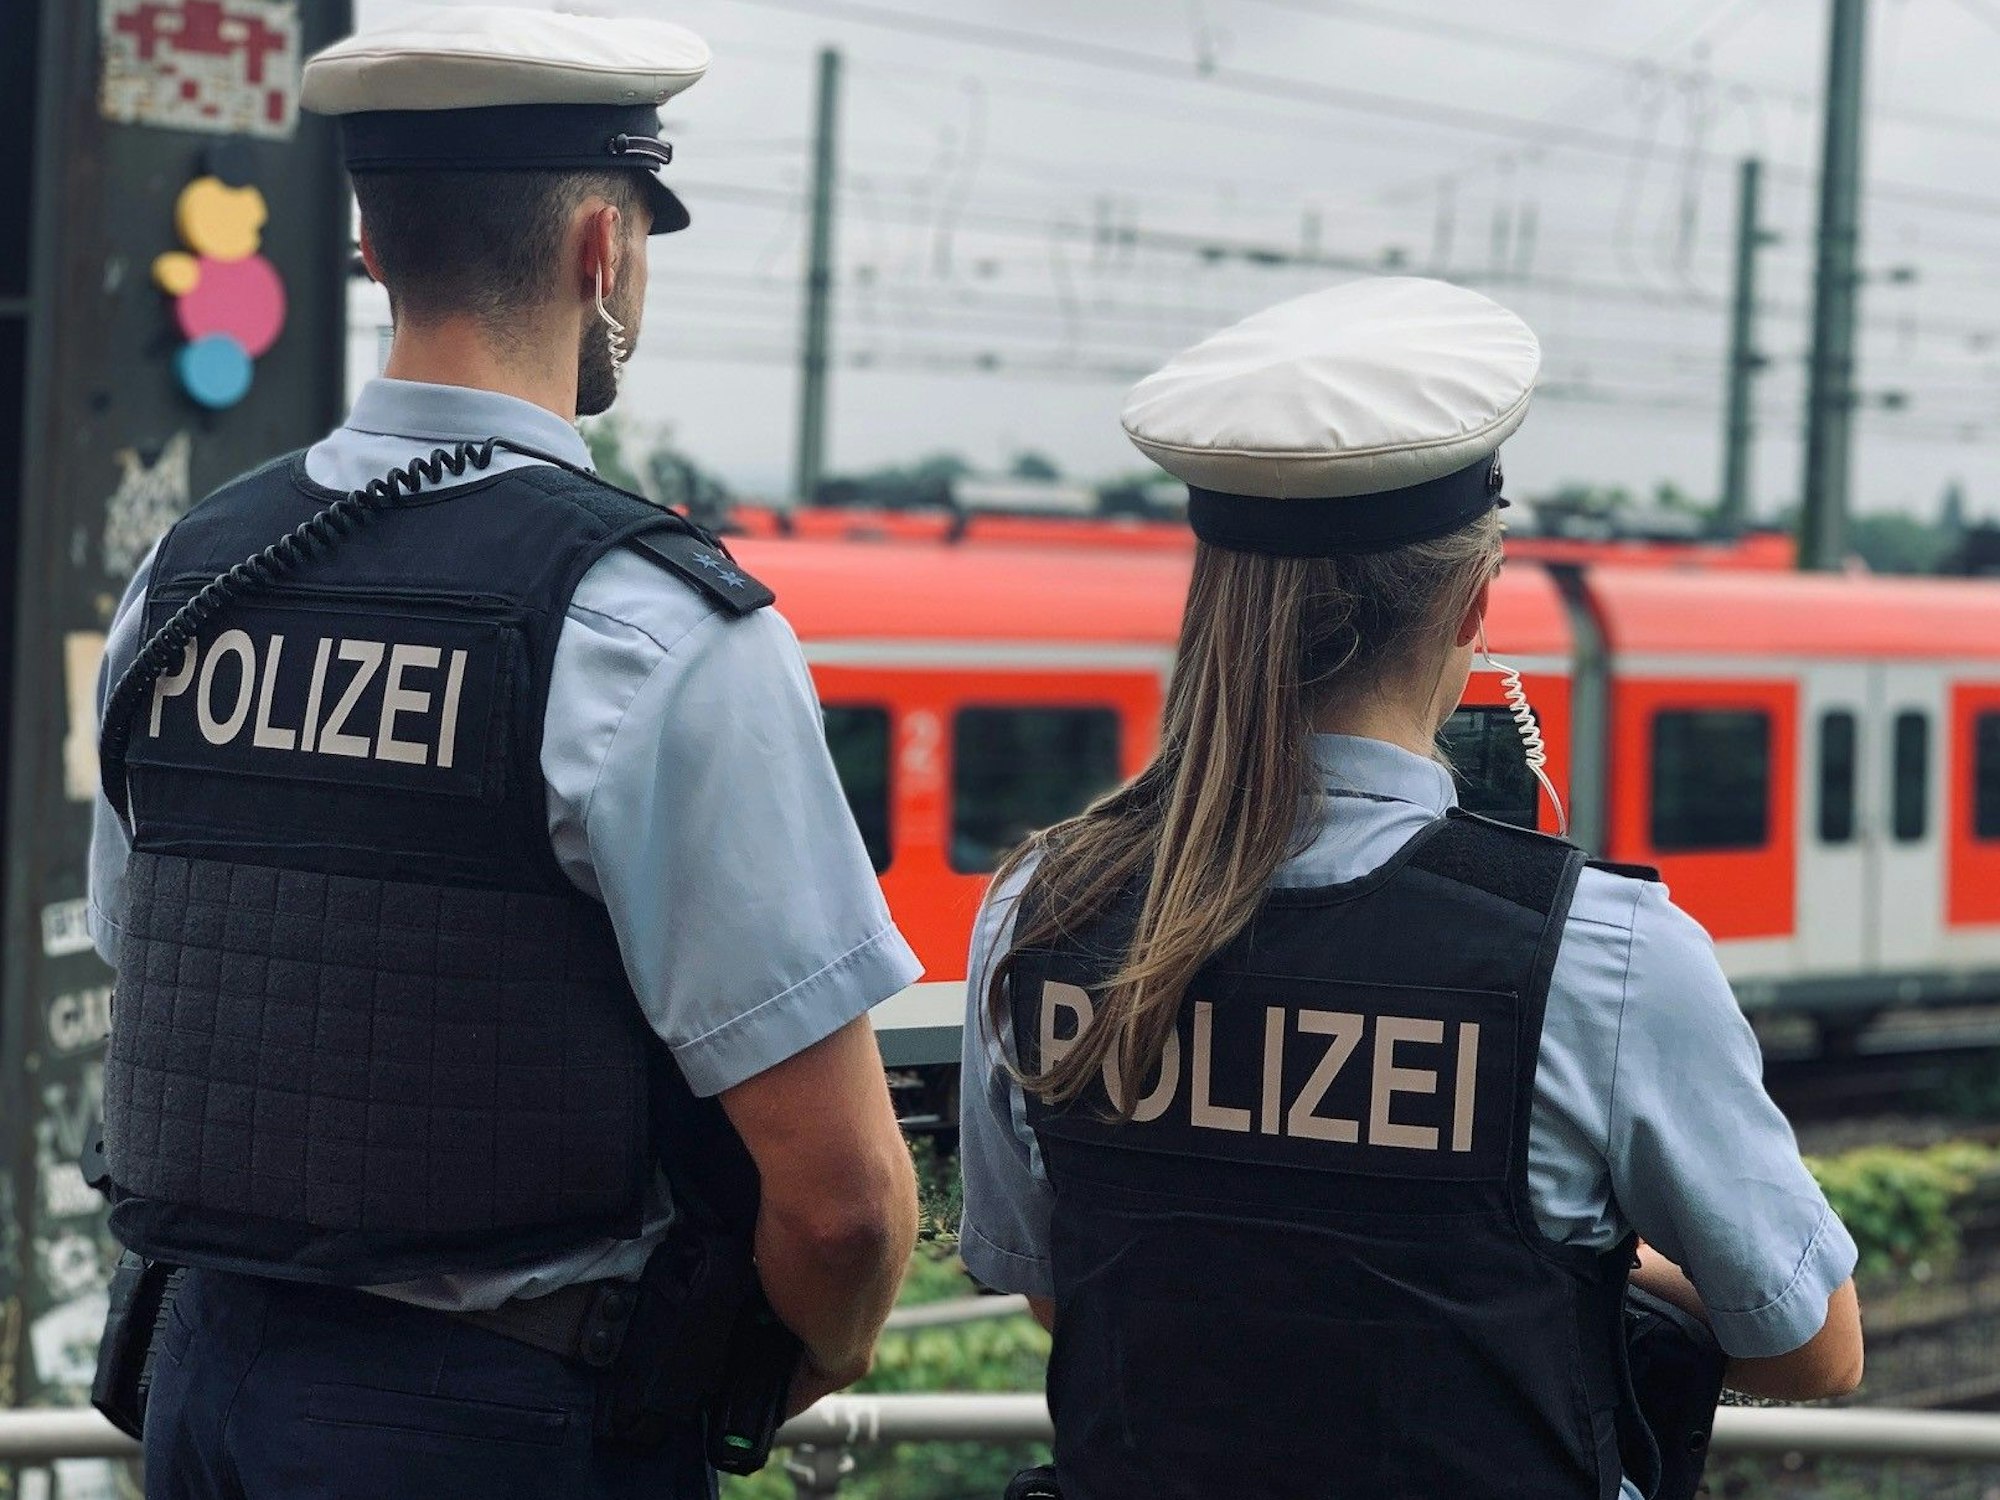 Das Foto zeigt eine Polizistin und einen Polizisten, die die Bahngleise beobachten.